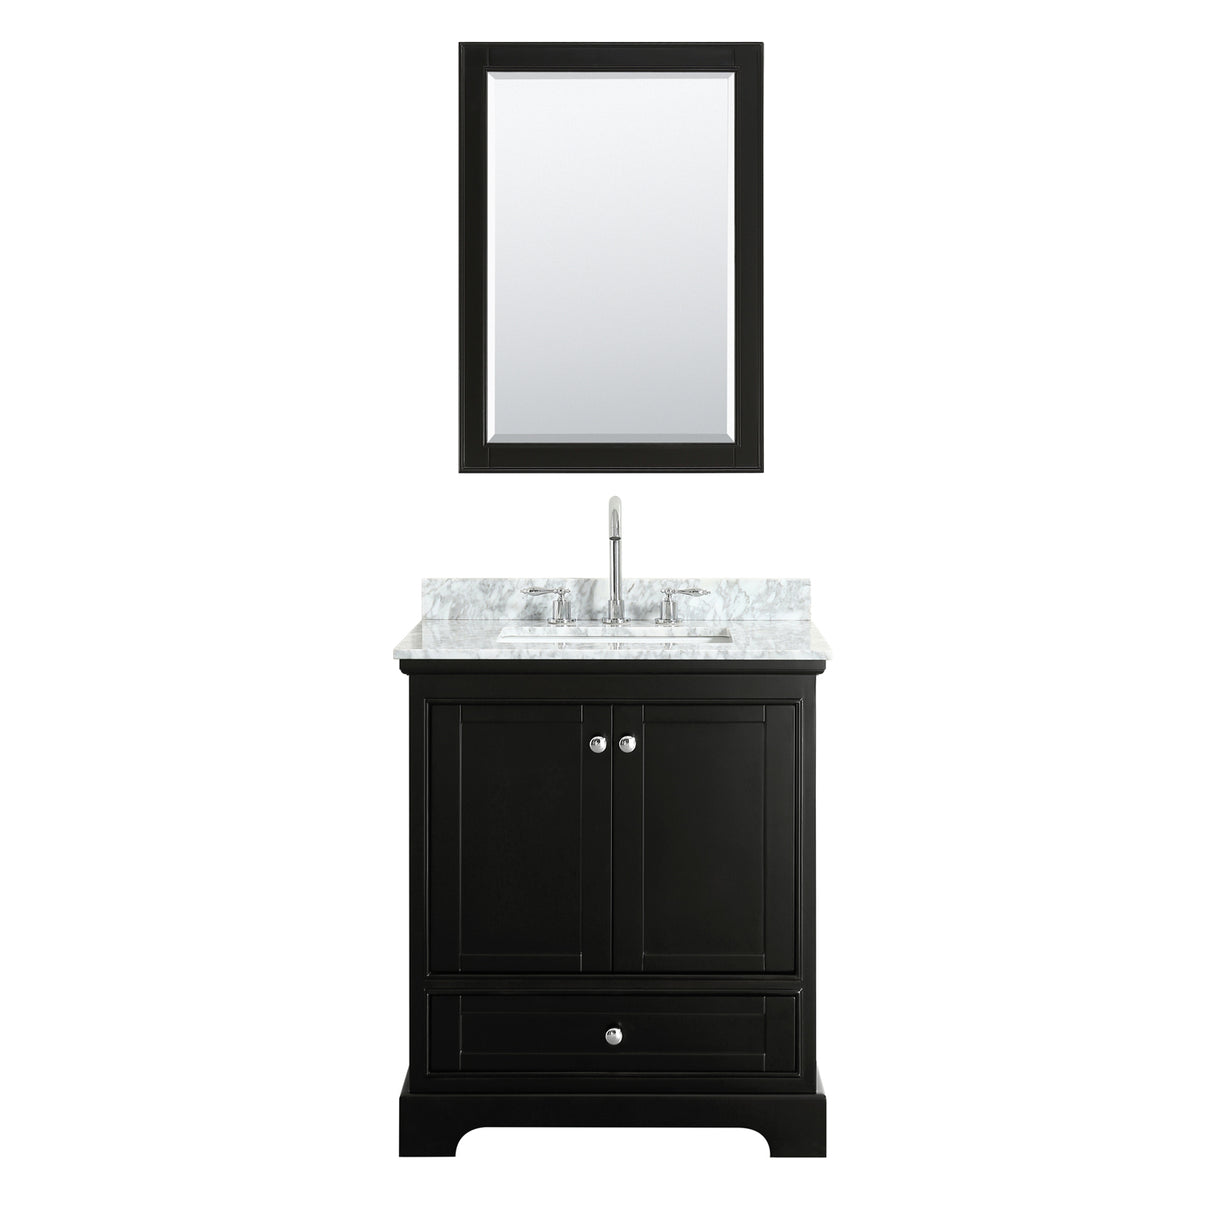 Deborah 30 Inch Single Bathroom Vanity in Dark Espresso White Carrara Marble Countertop Undermount Square Sink and Medicine Cabinet